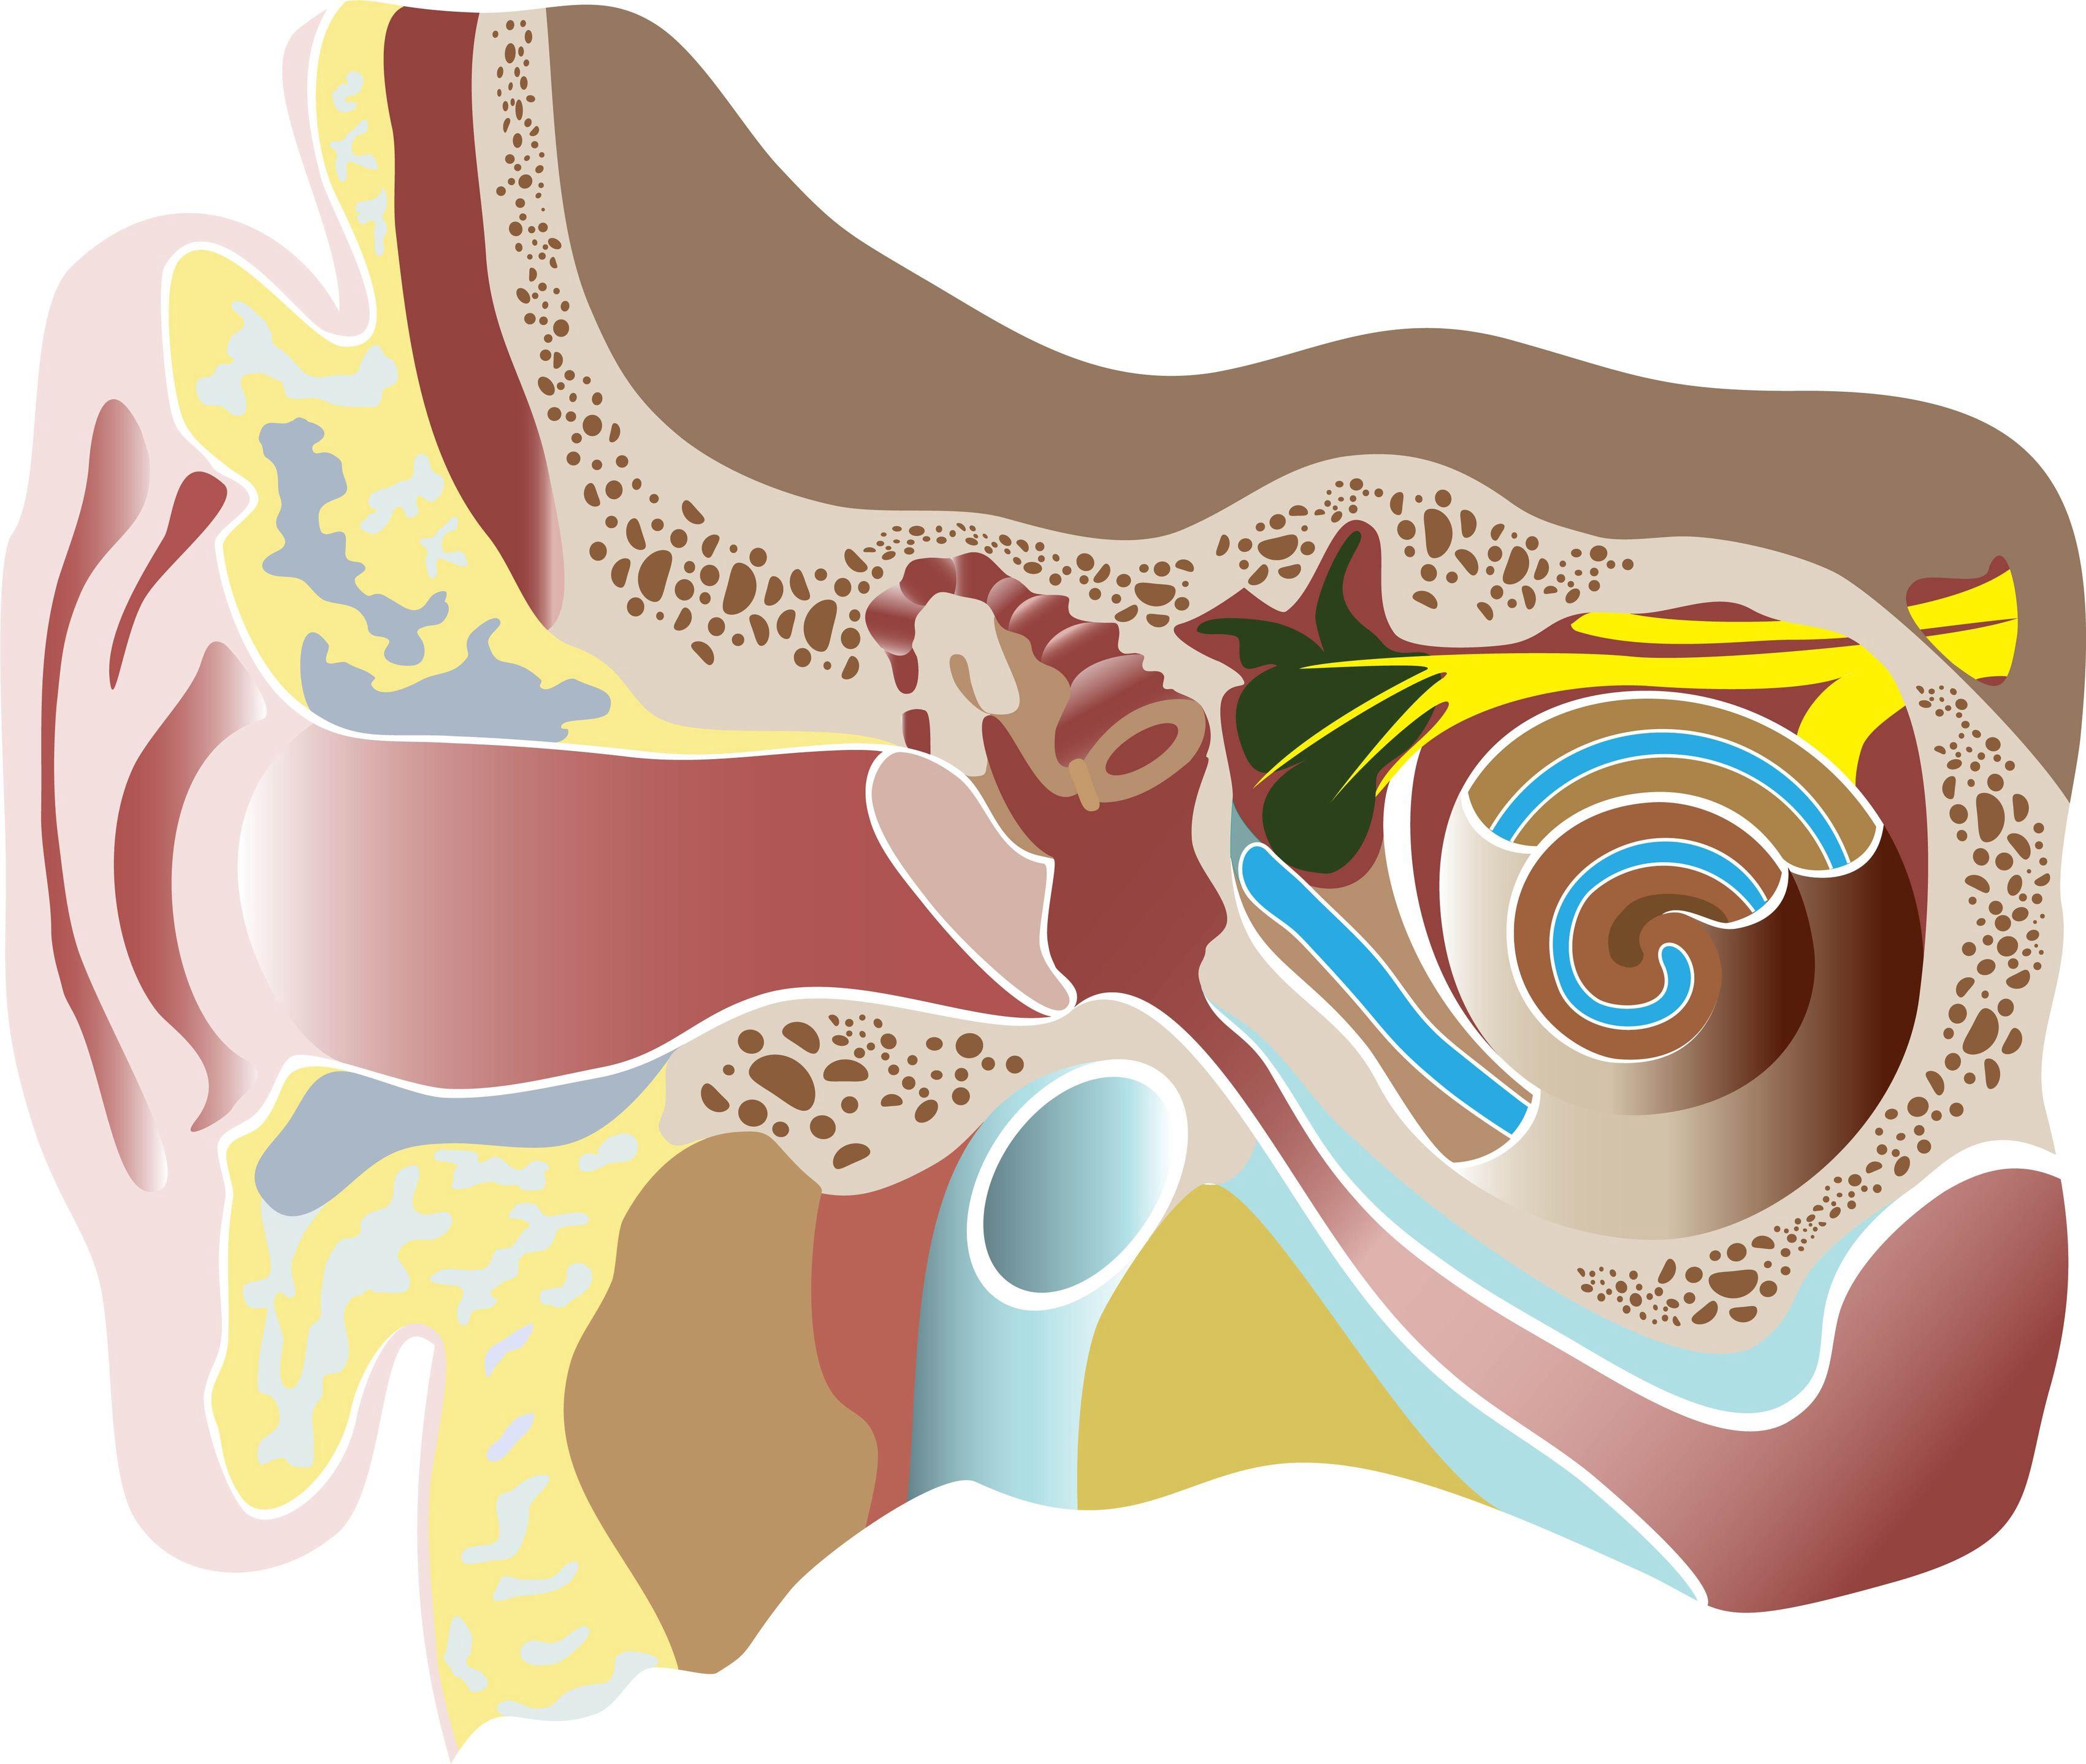 創傷性鼓膜穿孔的治療分析